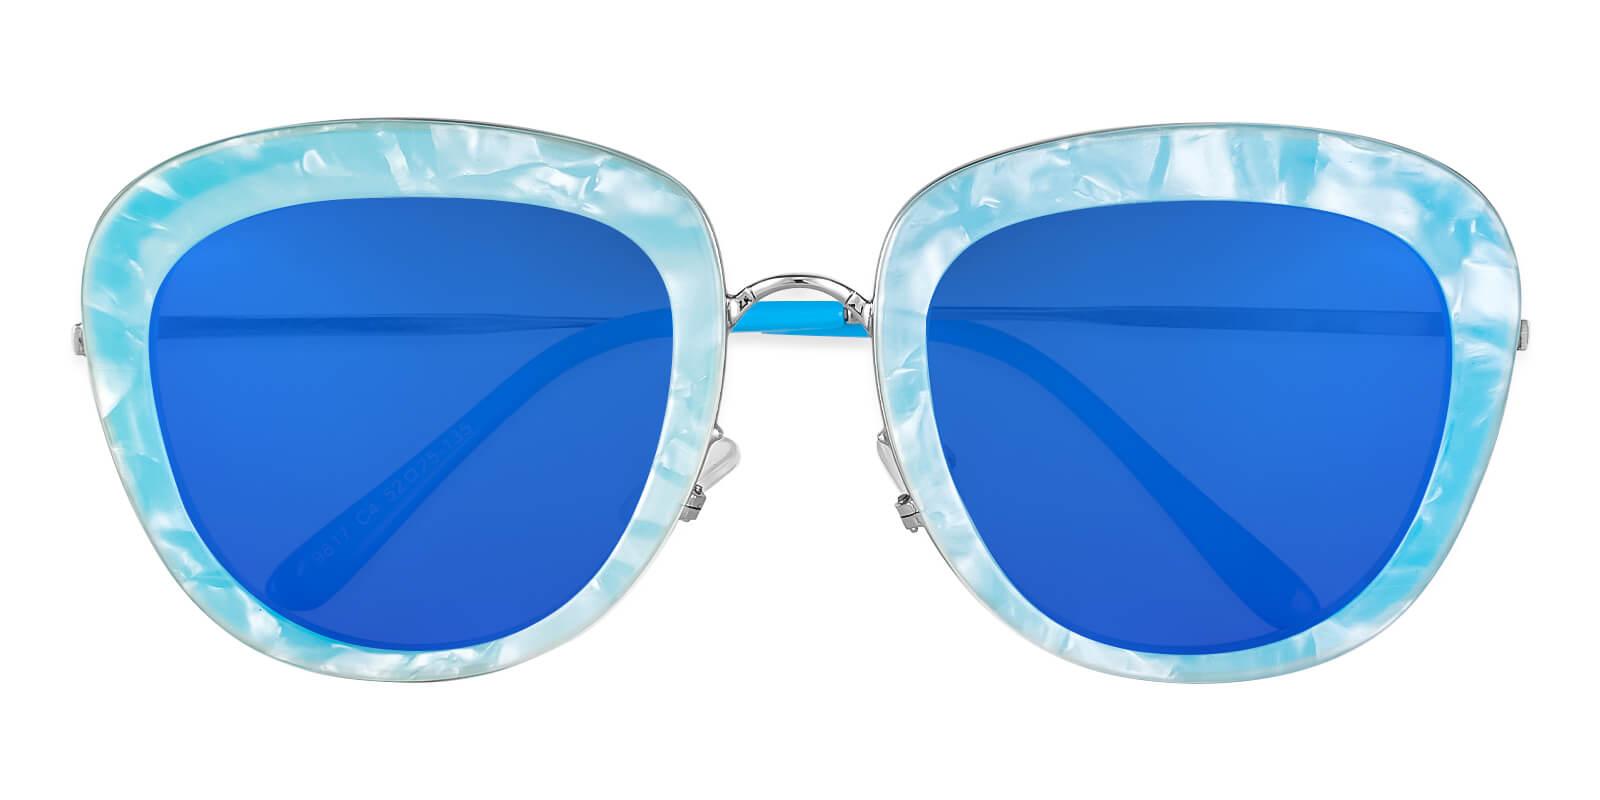 Jupiter Blue  NosePads , Sunglasses Frames from ABBE Glasses